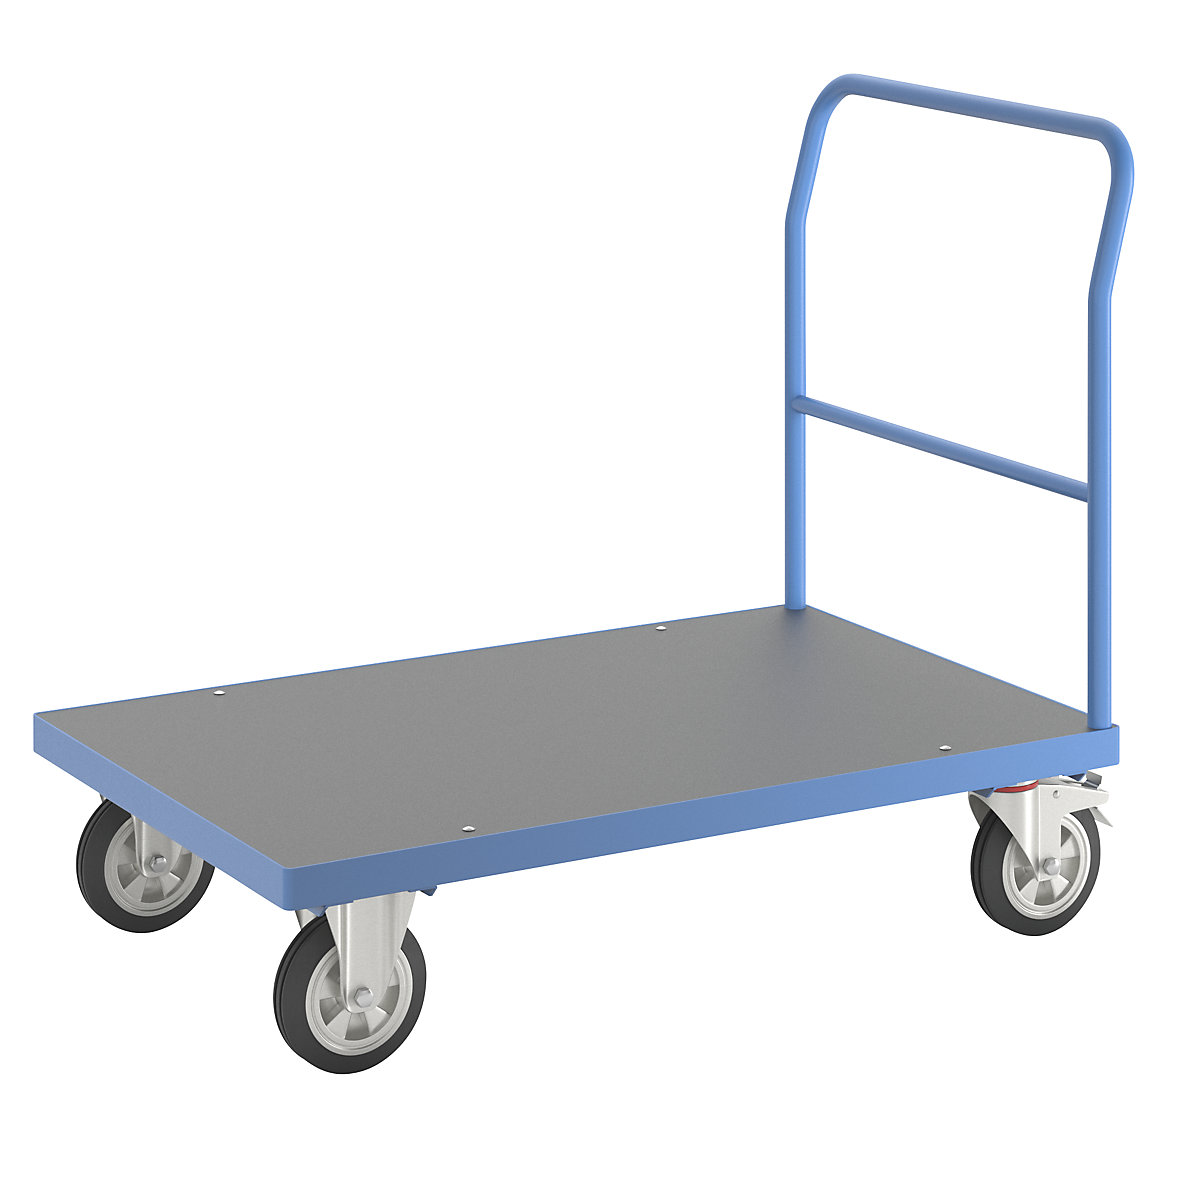 Wózek platformowy – eurokraft pro, pałąk rurowy, elastyczne ogumienie pełne, dł. x szer. 1250 x 800 mm, jasnoniebieski-8